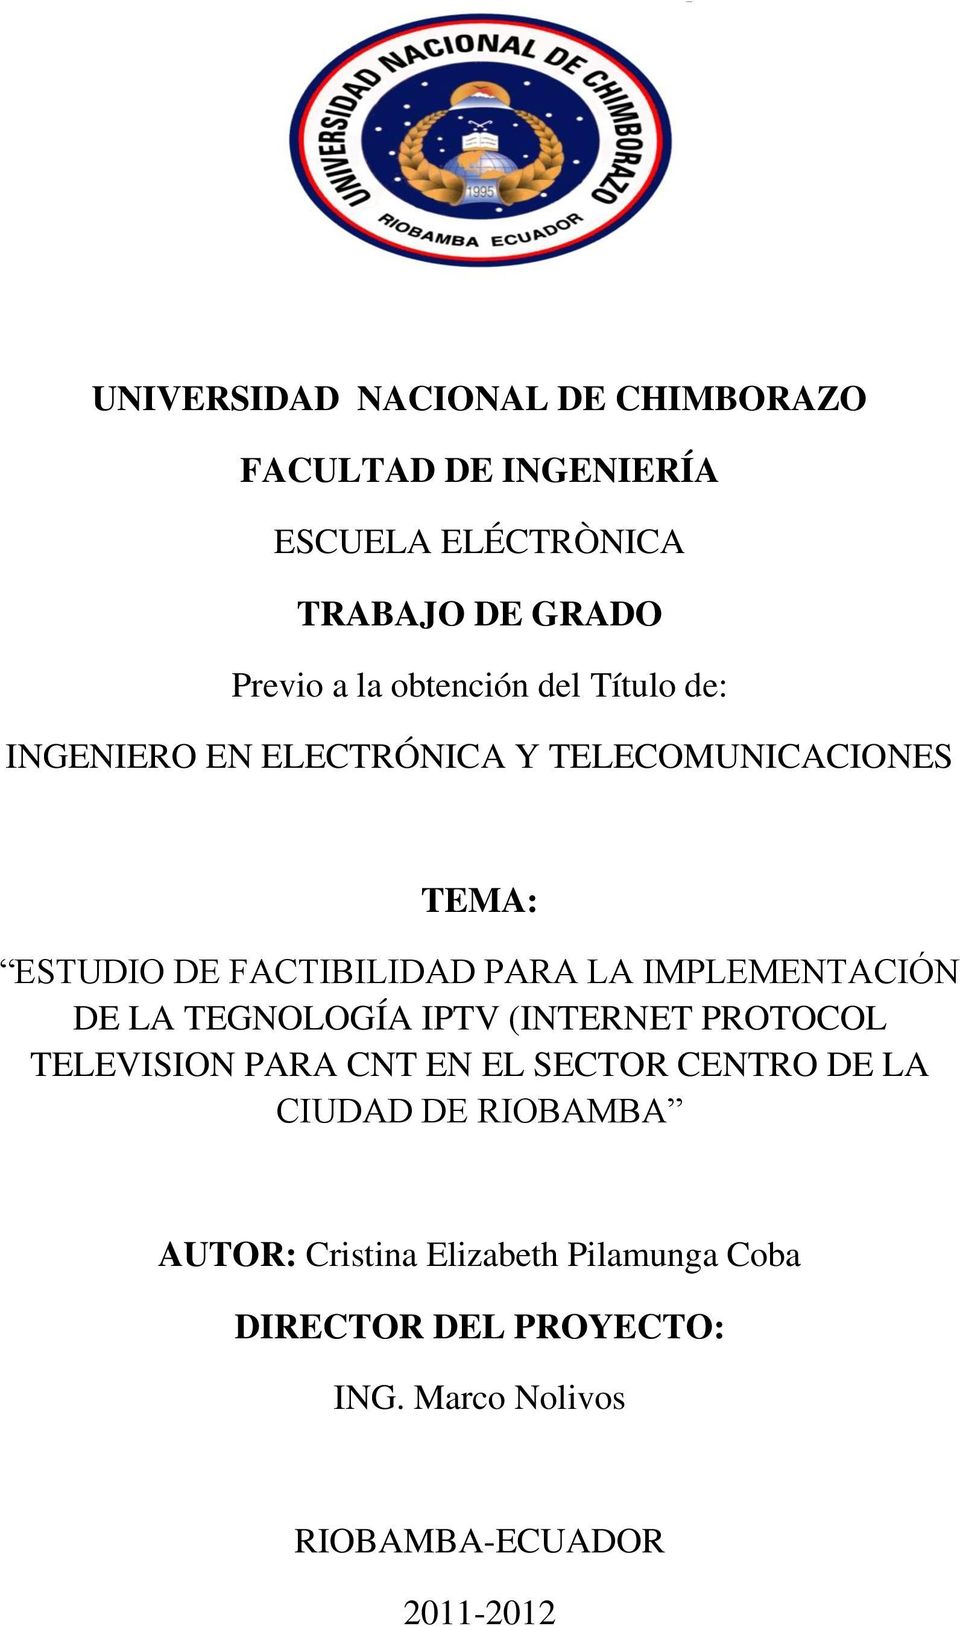 IMPLEMENTACIÓN DE LA TEGNOLOGÍA IPTV (INTERNET PROTOCOL TELEVISION PARA CNT EN EL SECTOR CENTRO DE LA CIUDAD DE